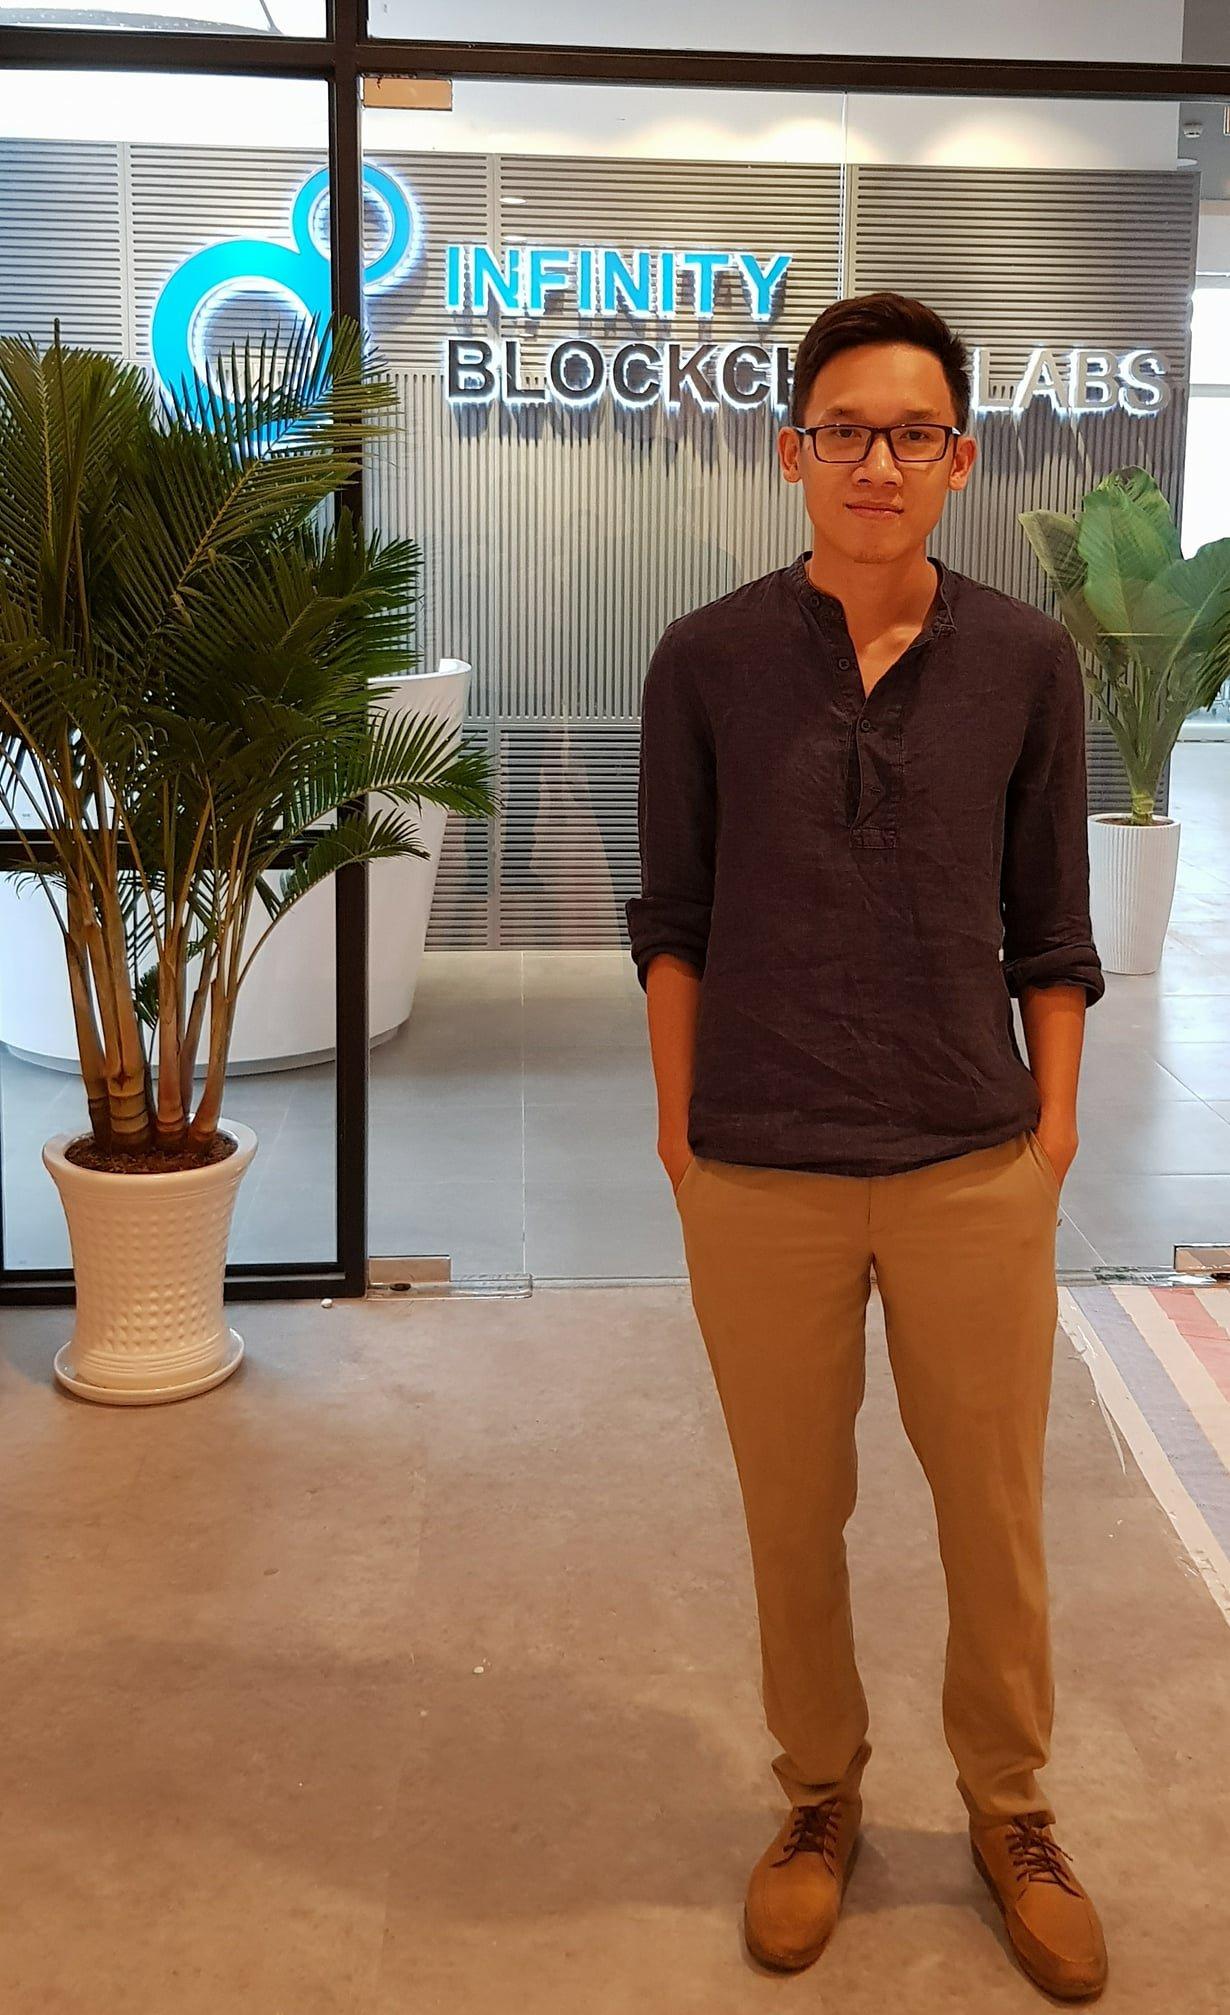 Hà Hoàng Linh – Một chàng trai trẻ đam mê tài chính và mục tiêu trở thành chuyên gia trong lĩnh vực tài chính